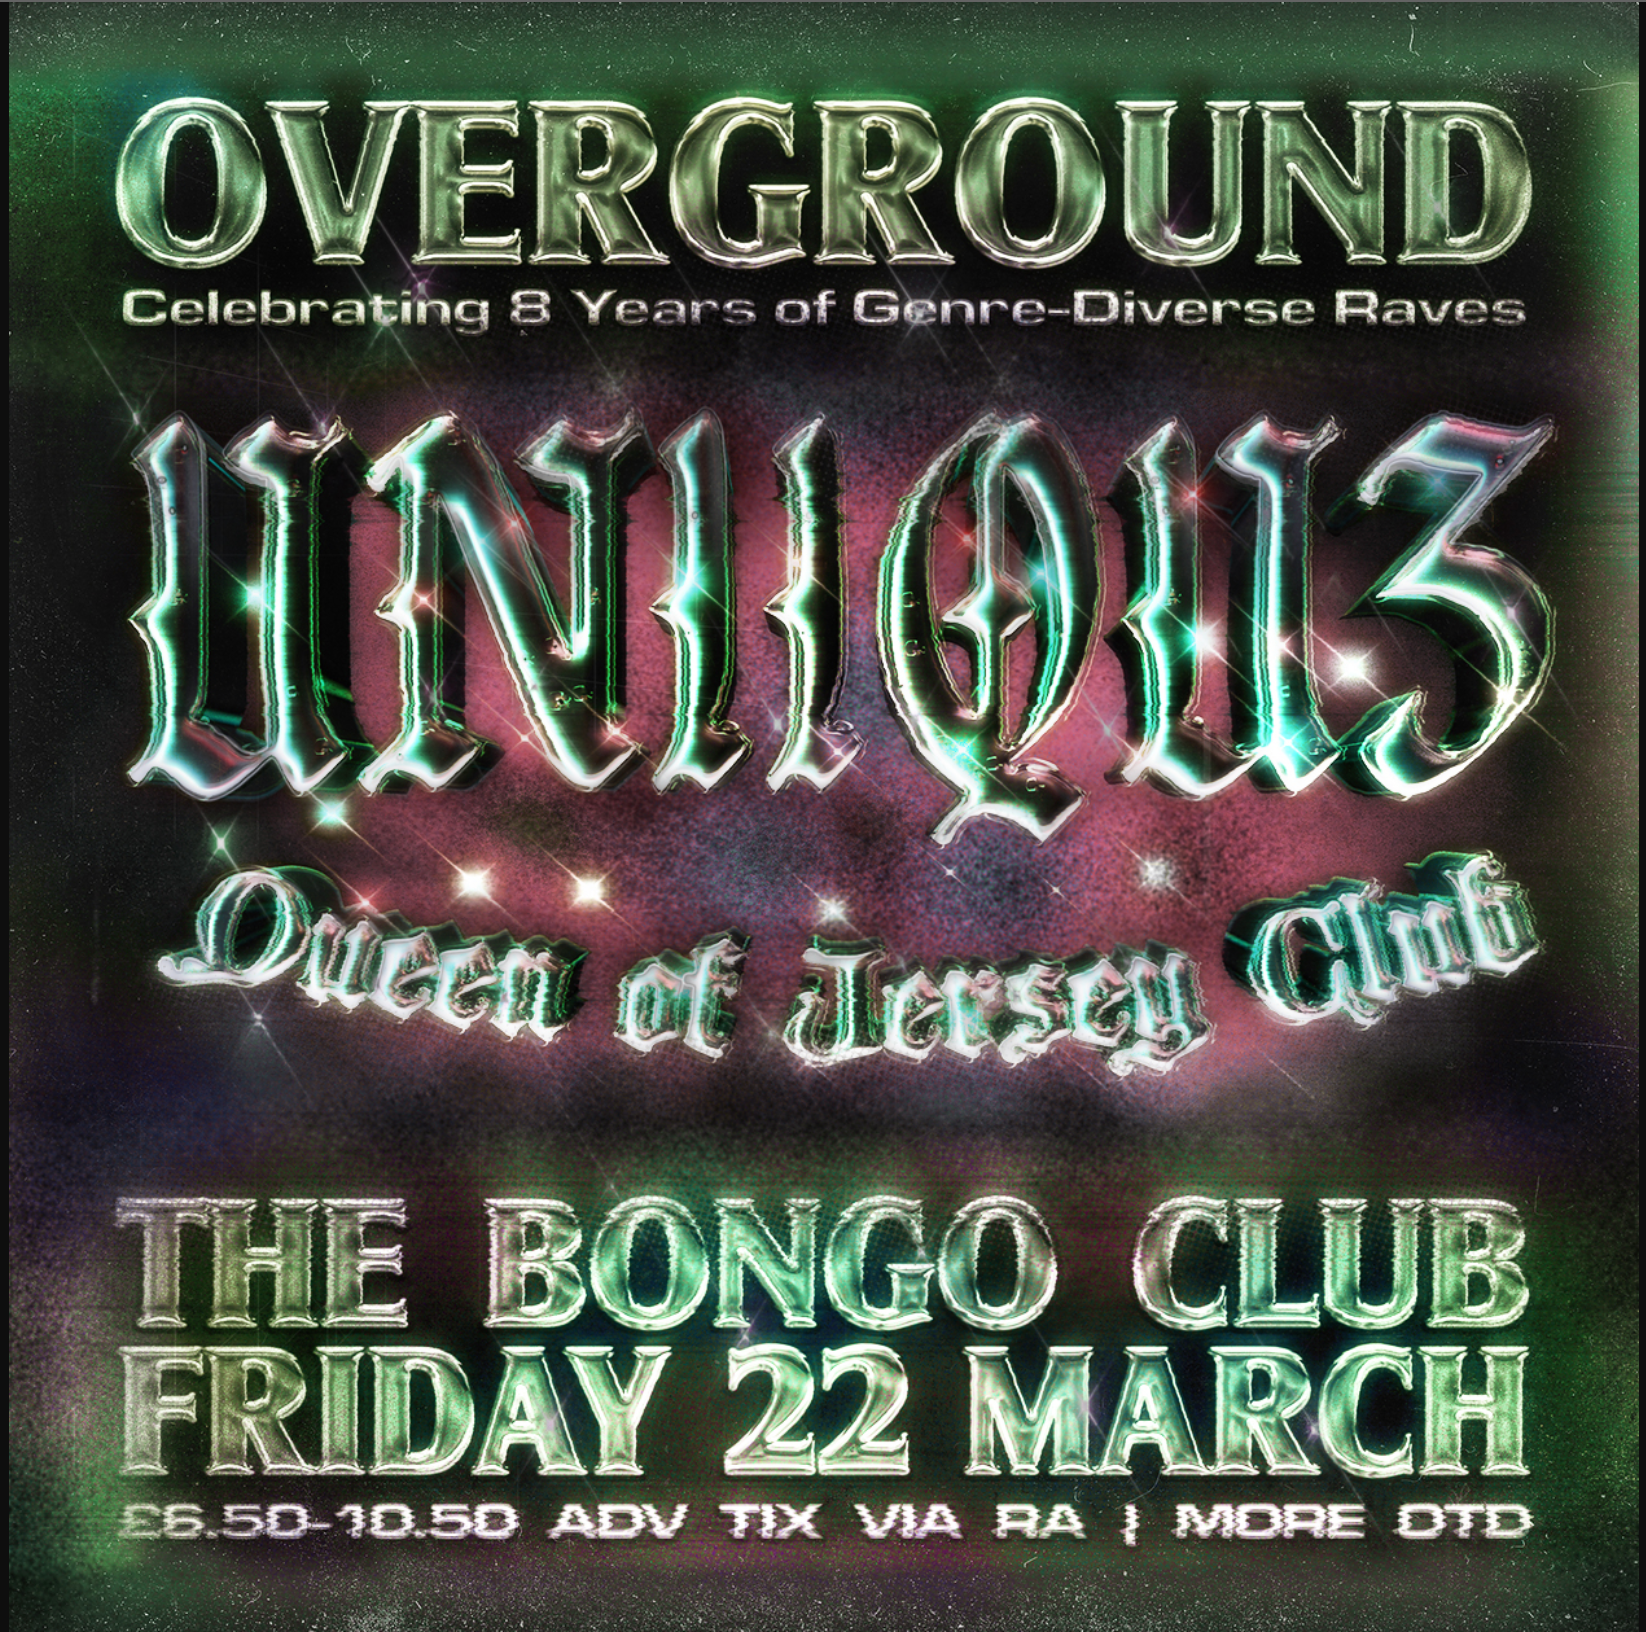 ☻ UNiiQU3 ☻ Queen of Jersey Club ☻ 8 Years ᴏᴠᴇʀɢʀᴏᴜɴᴅ ☻ Bongo Club ☻ - Página frontal